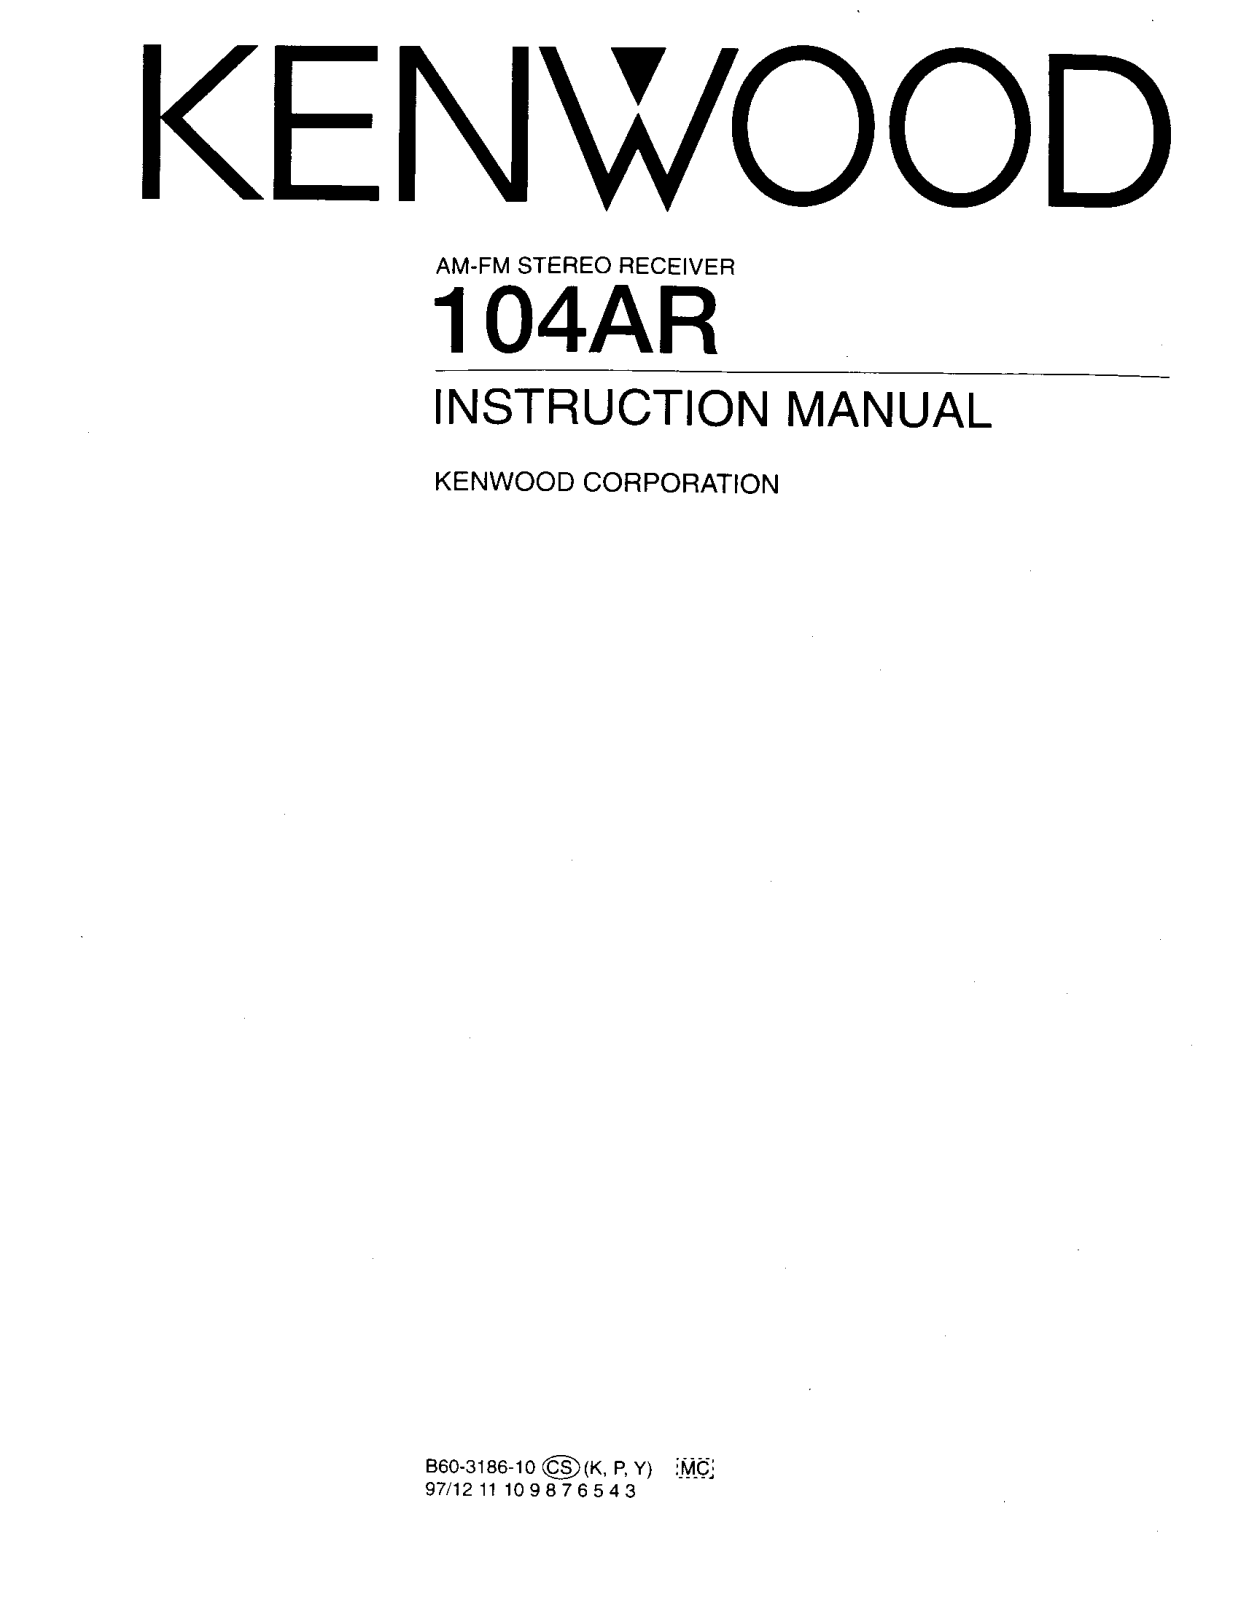 Kenwood 104AR Instruction Manual